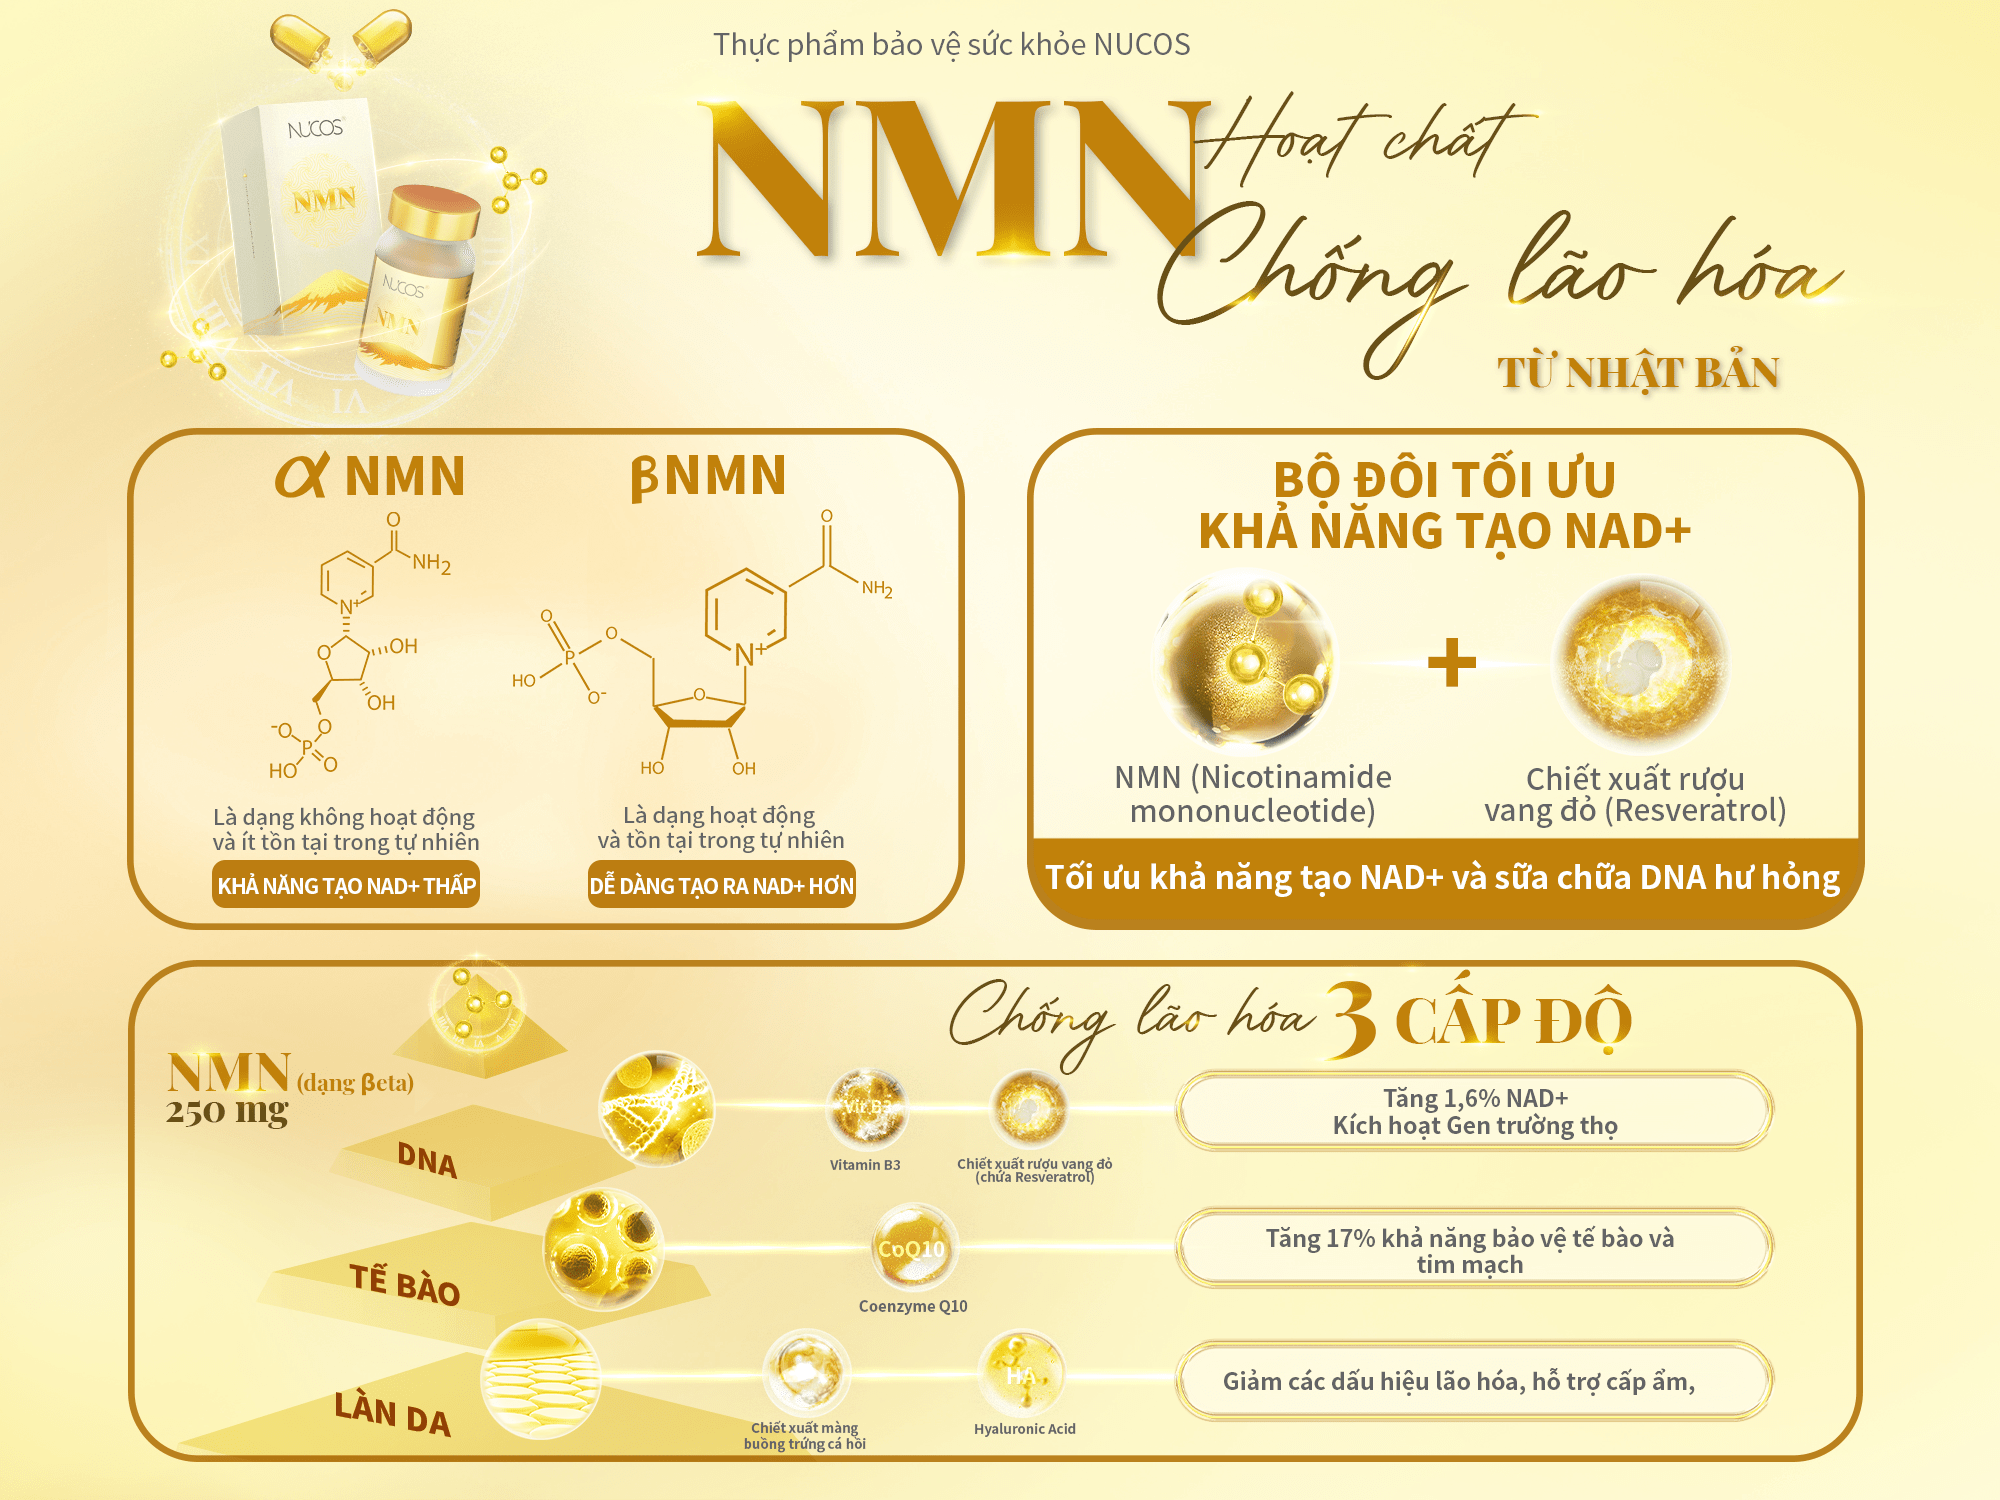 Nucos NMN sử dụng β-NMN với độ tinh khiết tuyệt đối